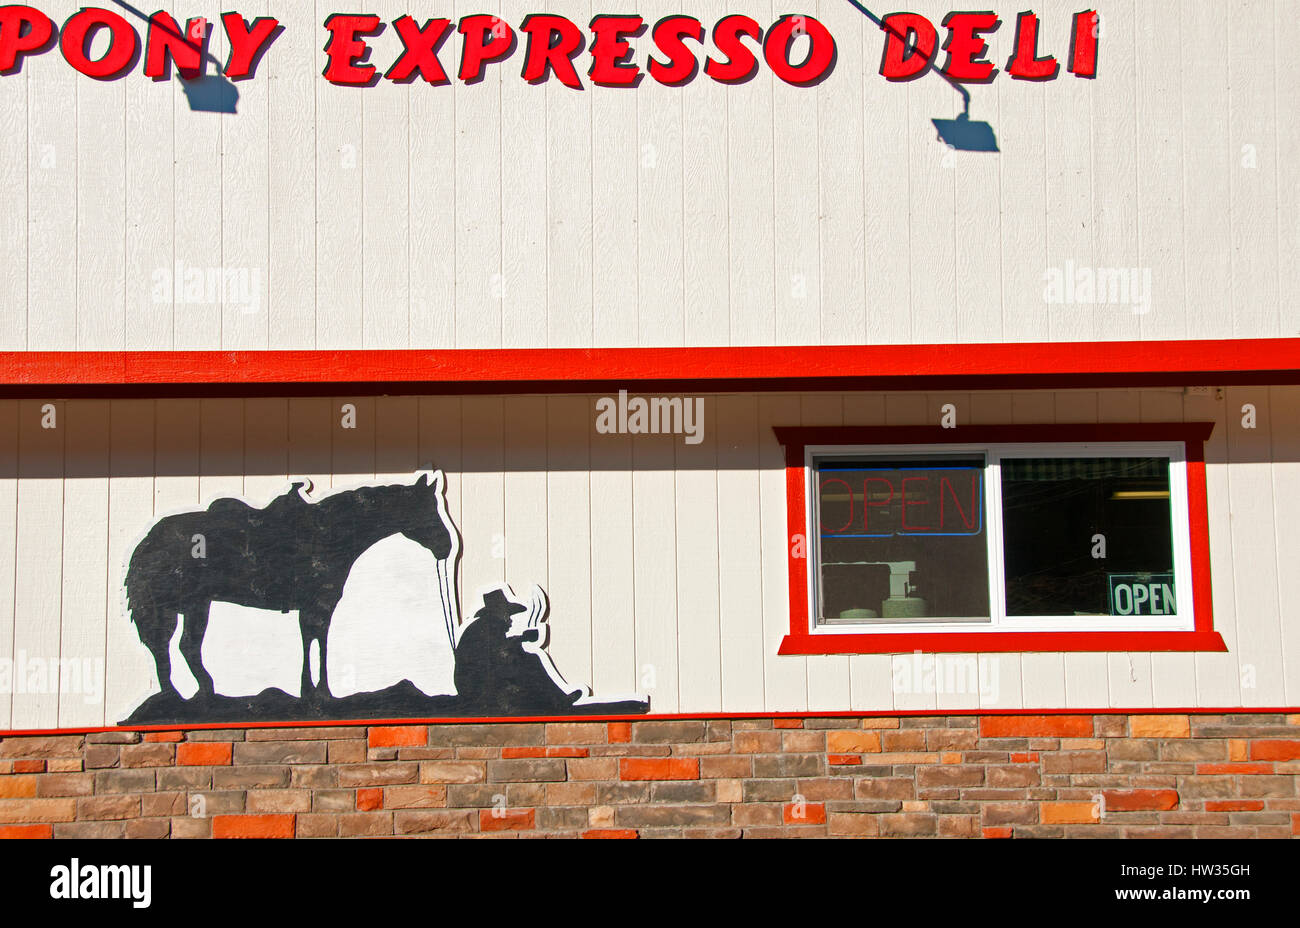 Pony Express Meats and Deli, Eureka, Nevada Stock Photo